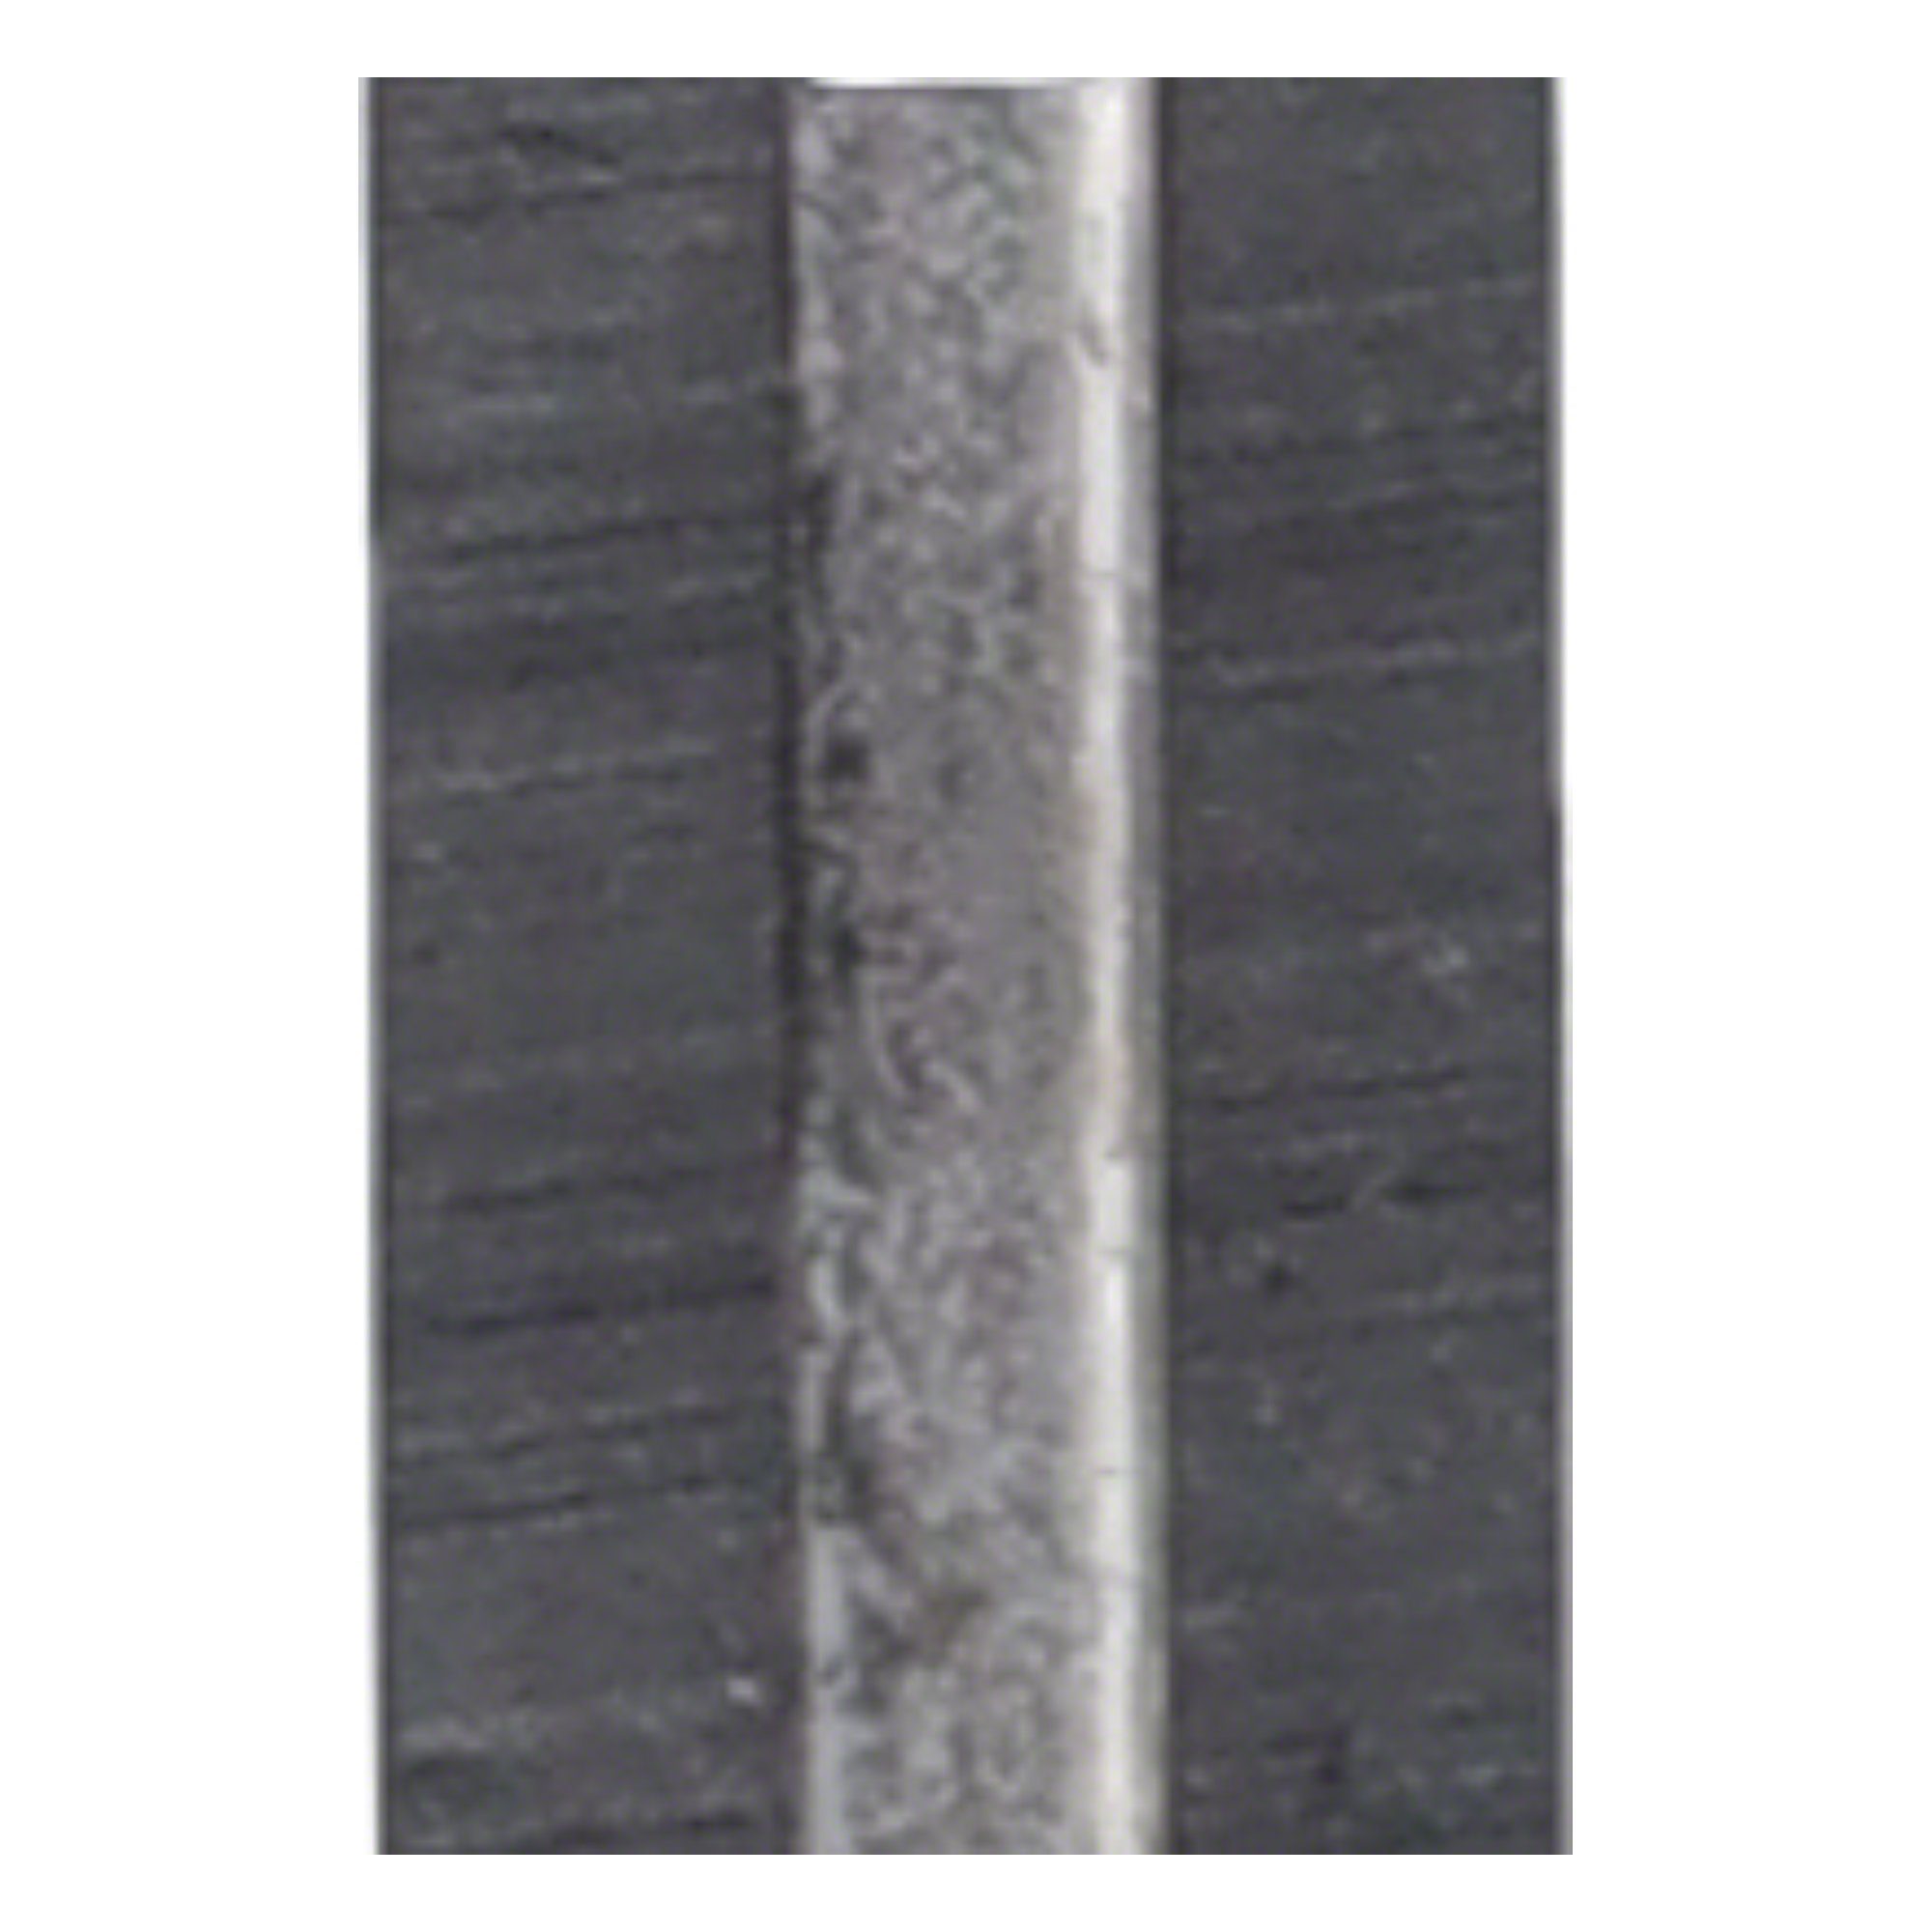 Tigra Wendeplattenfräser Mini-Wendeplatte 40 - Stück 10 T04F 35x5,5x1,1mm